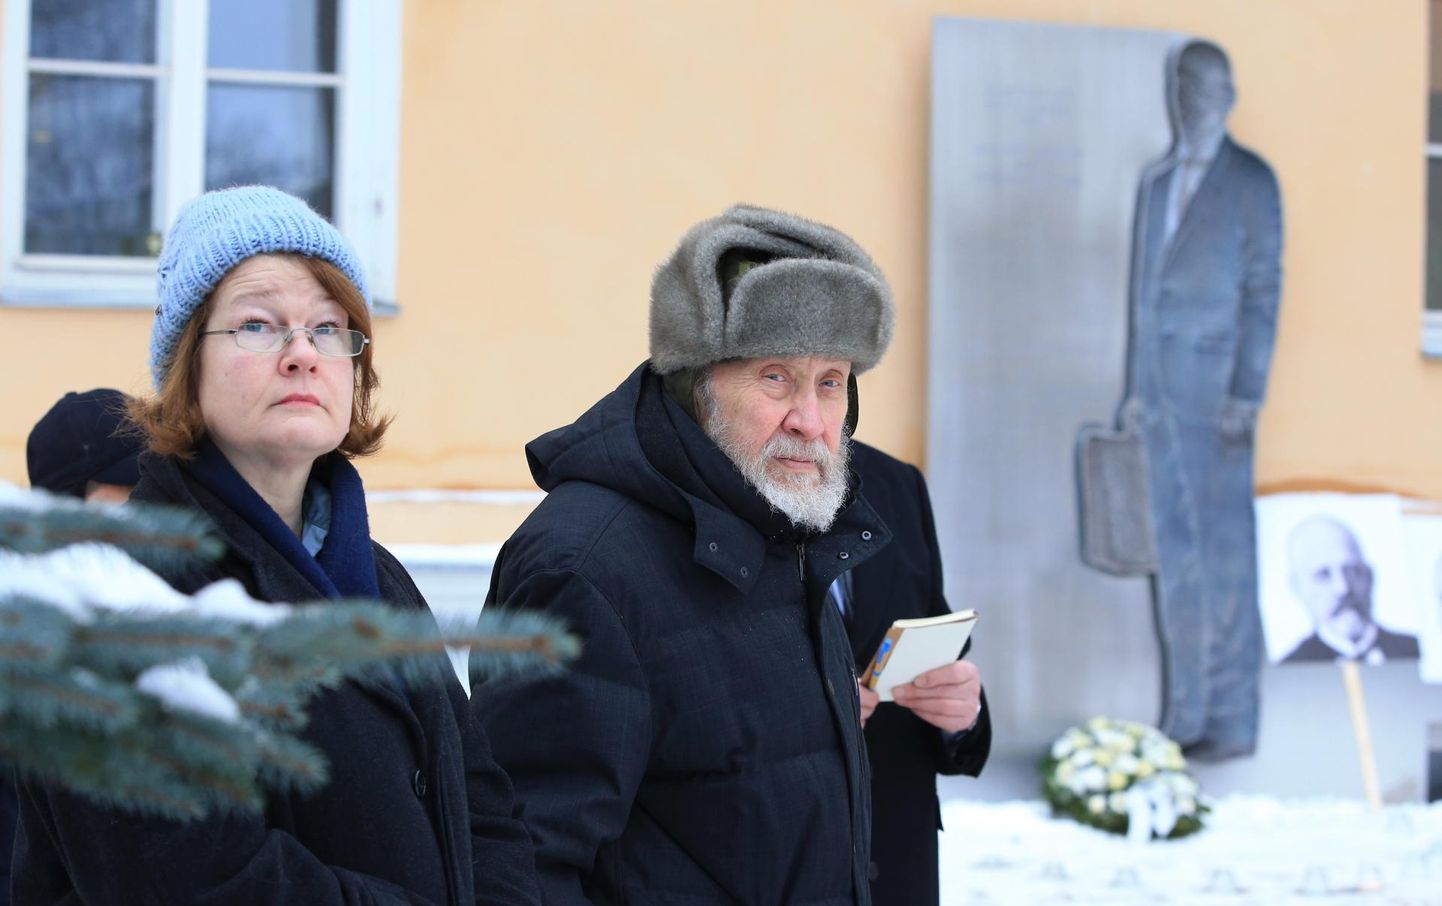 Tartu rahu 99. aastapäeva tähistamine Poska gümnaasiumi juures.
Pildil endine vabadusvõitleja Enn Tarto koos abikaasa Piretiga.
ma/Foto MARGUS ANSU EESTI MEEDIA.